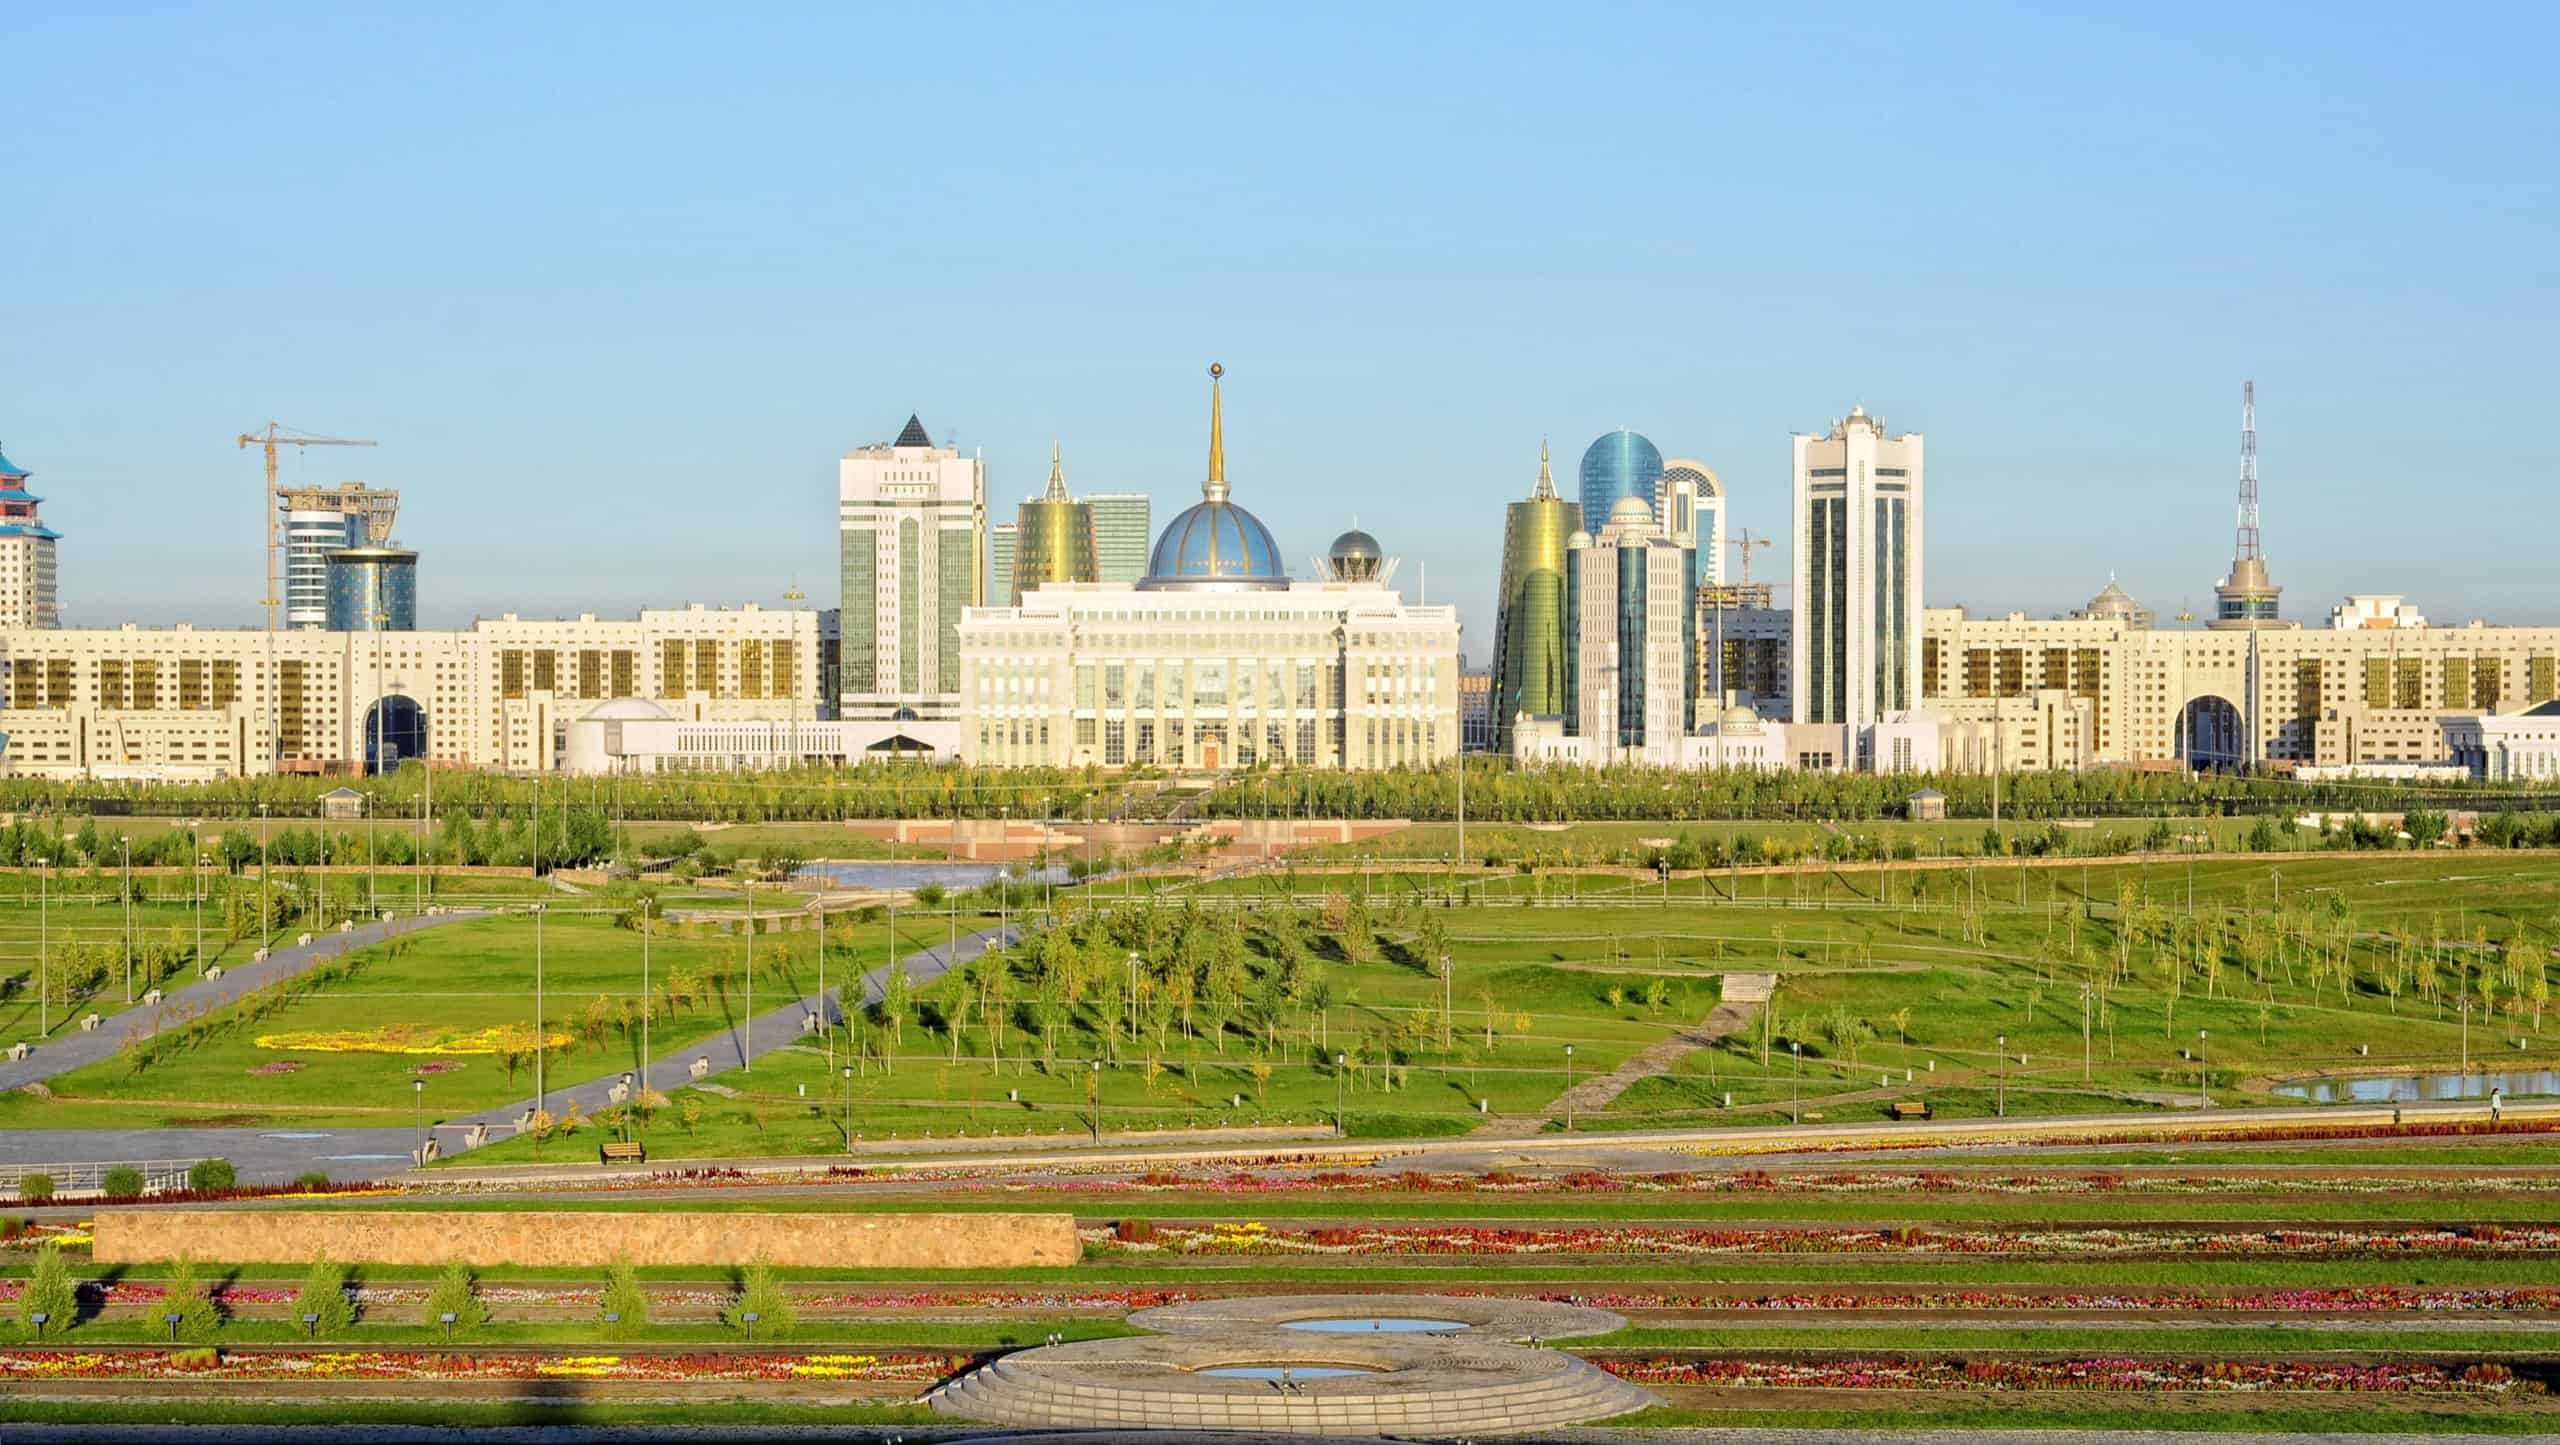 Cityscape in Kazakhstan